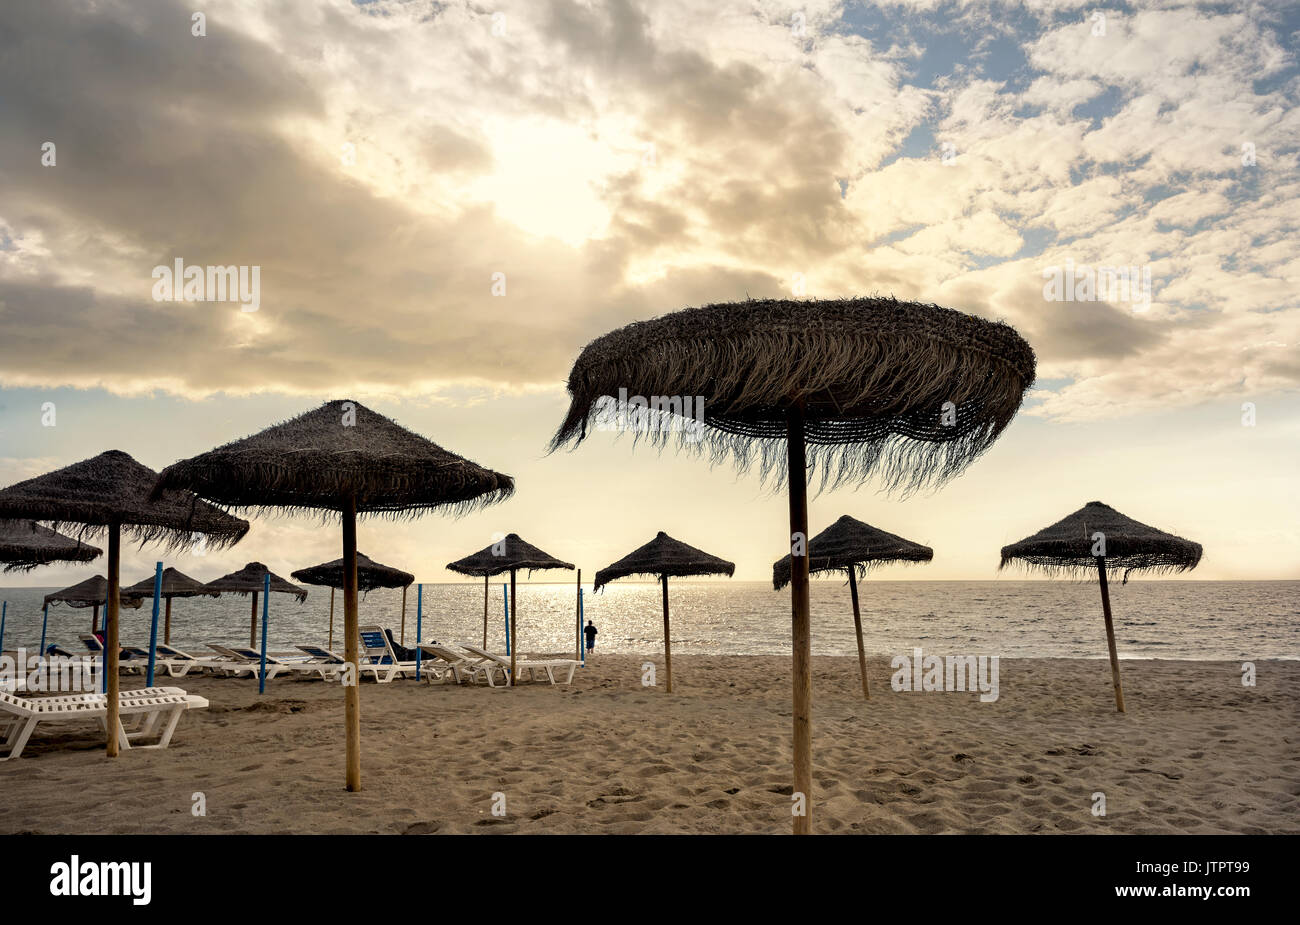 Torremolinos beach. Malaga province, Costa del Sol, Andalusia, Spain Stock Photo